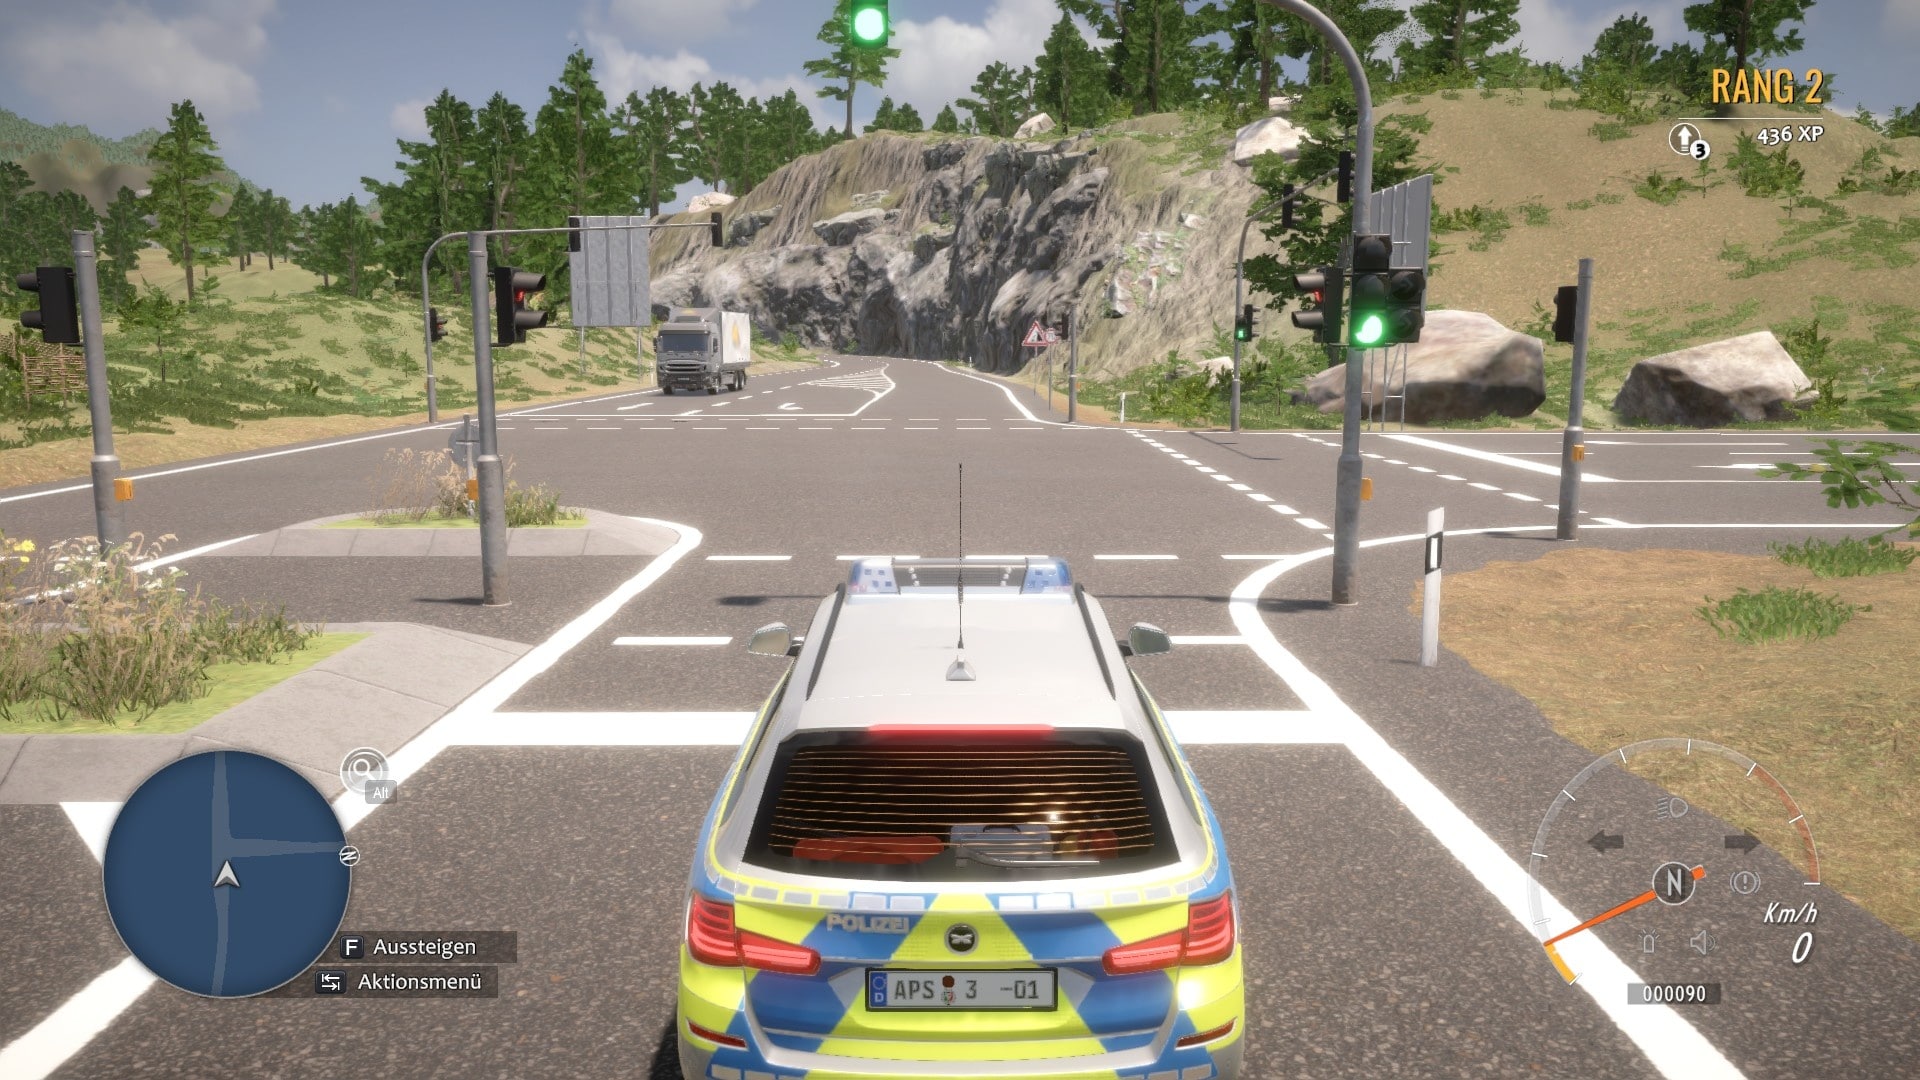  In de voorganger werkten de verkeerslichten niet bij het uitkomen; Au-tobahn Polizei Simulator 3 doet dat beter)